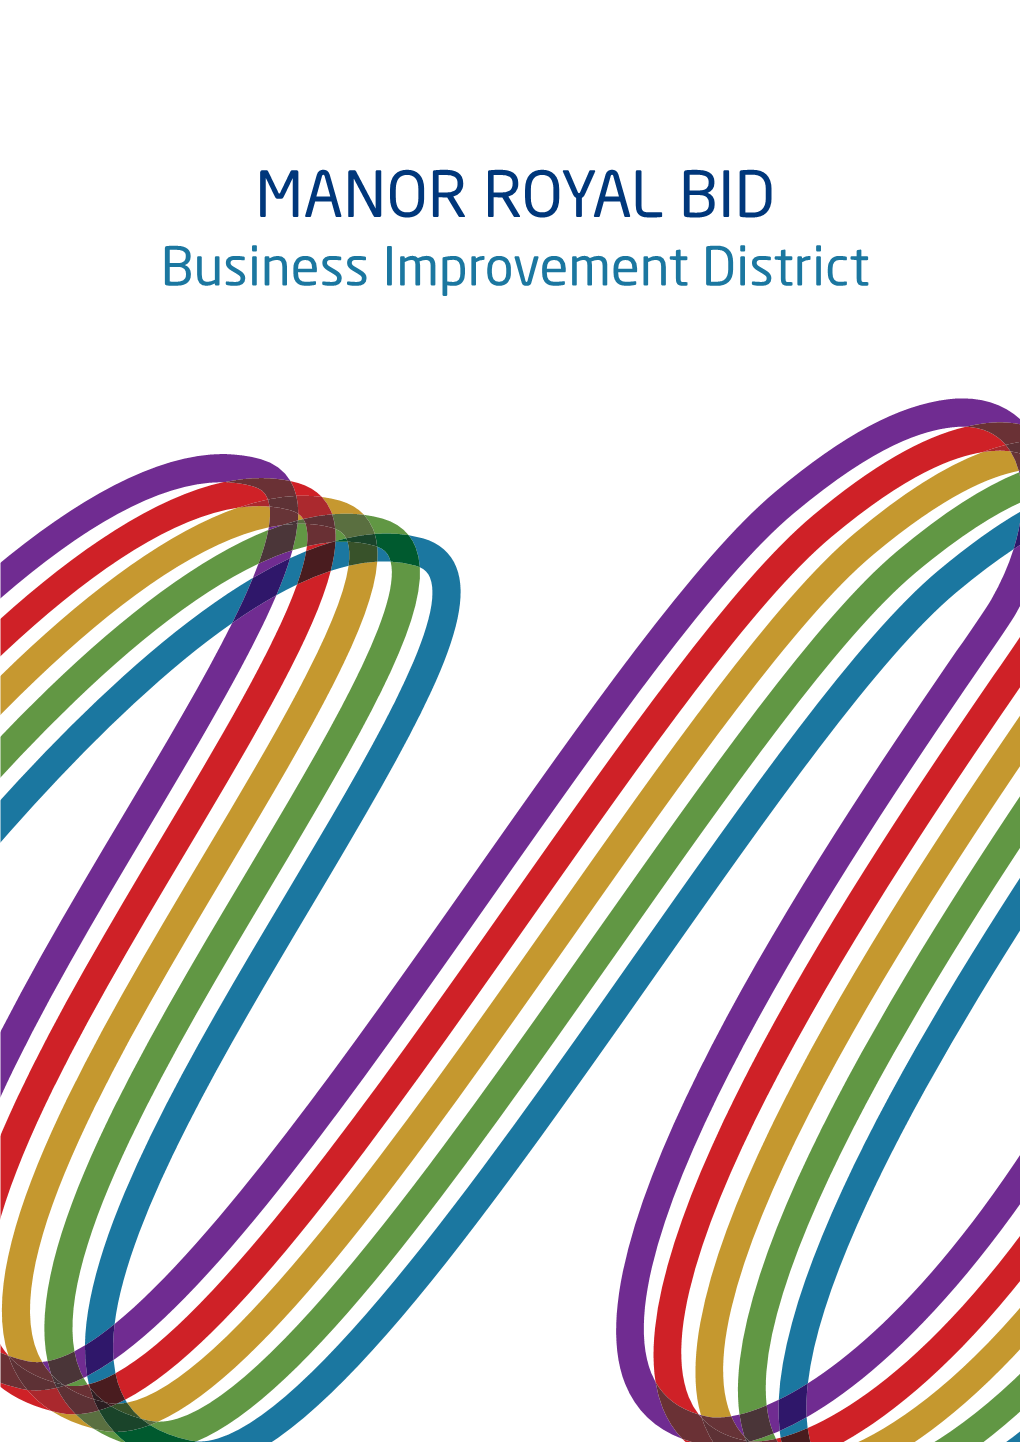 Business Improvement District 700 Business Premises 500 Businesses